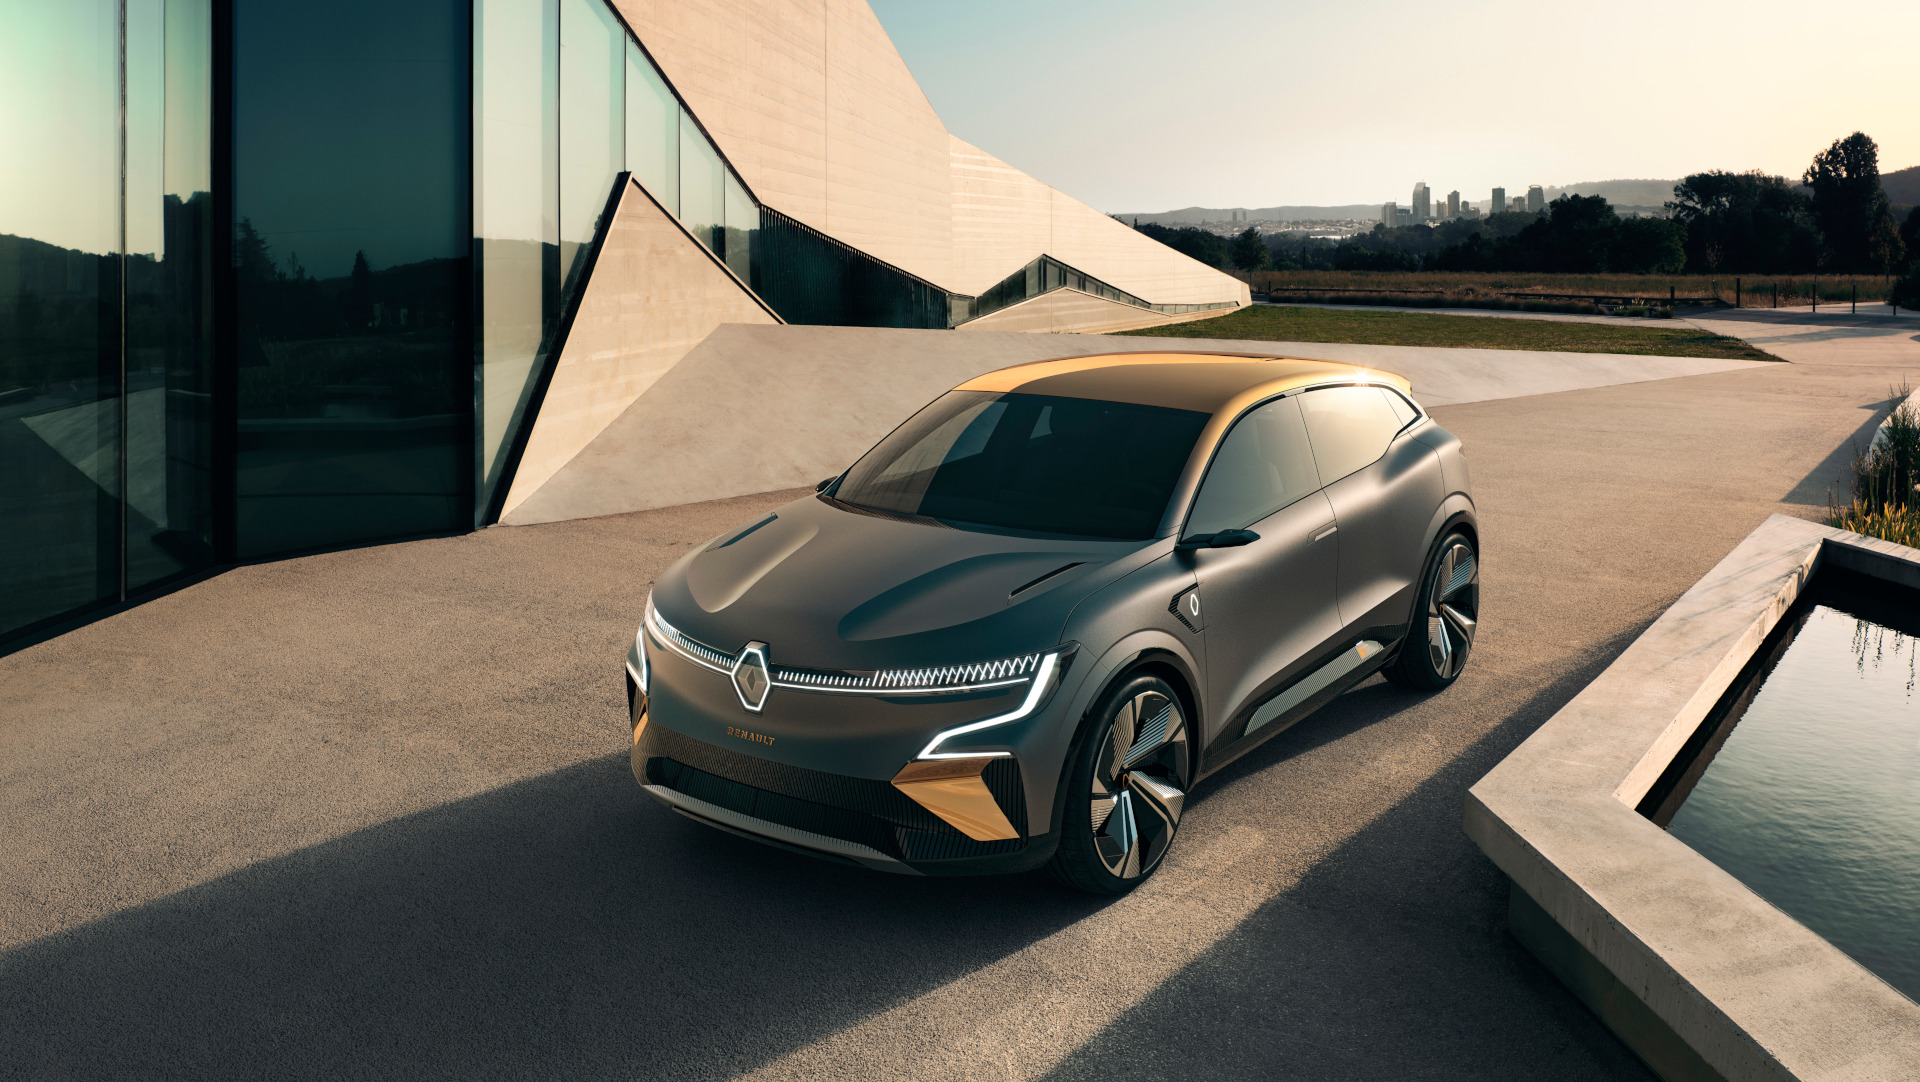 Nouveau logo Renault : il sera inauguré sur la future Mégane